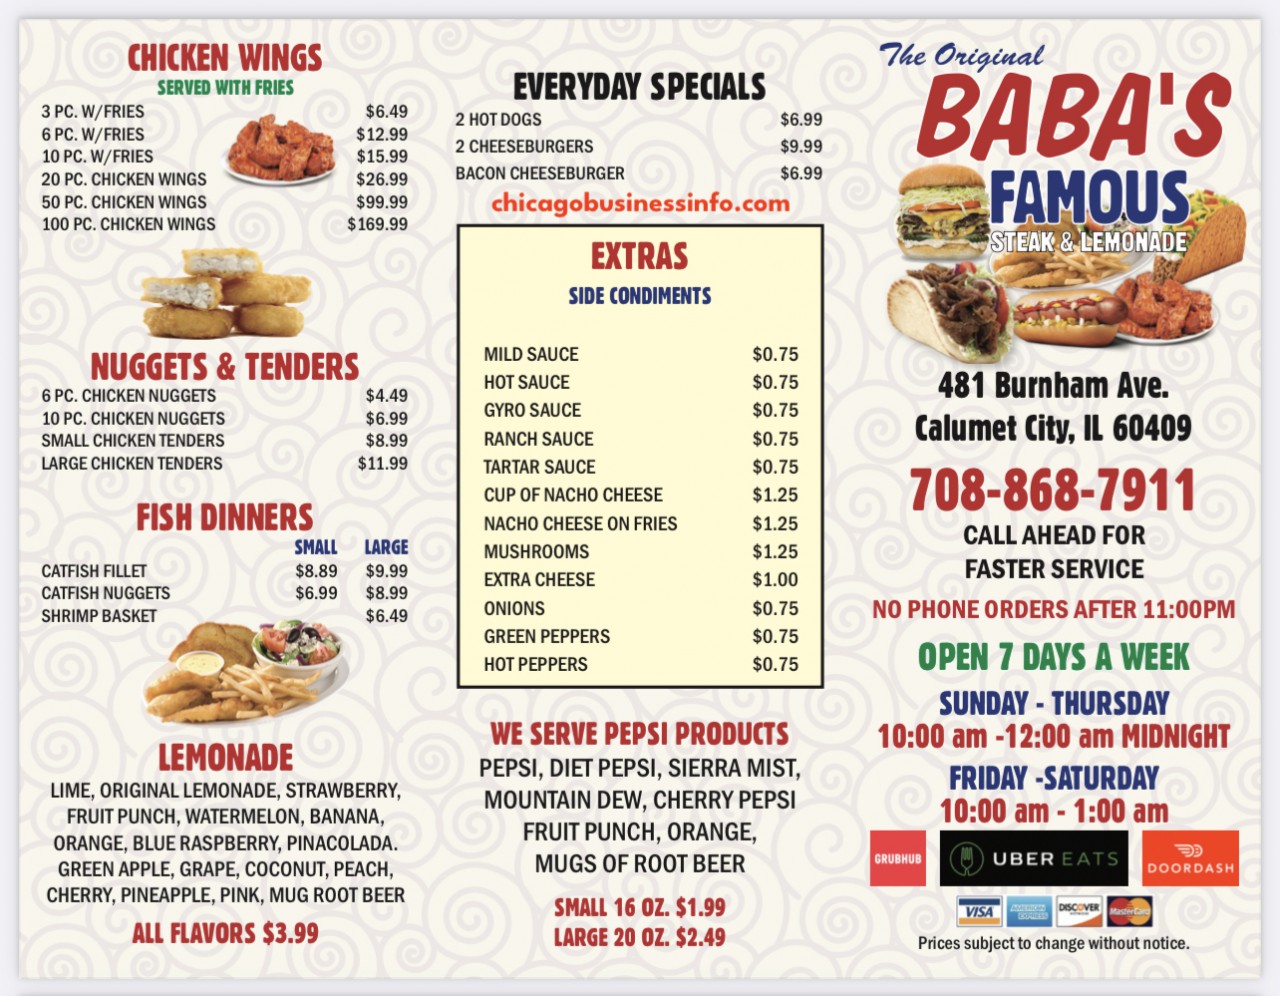 Baba's Famous Steak And Lemonade 481 Burnham Ave Calumet City Menu 1